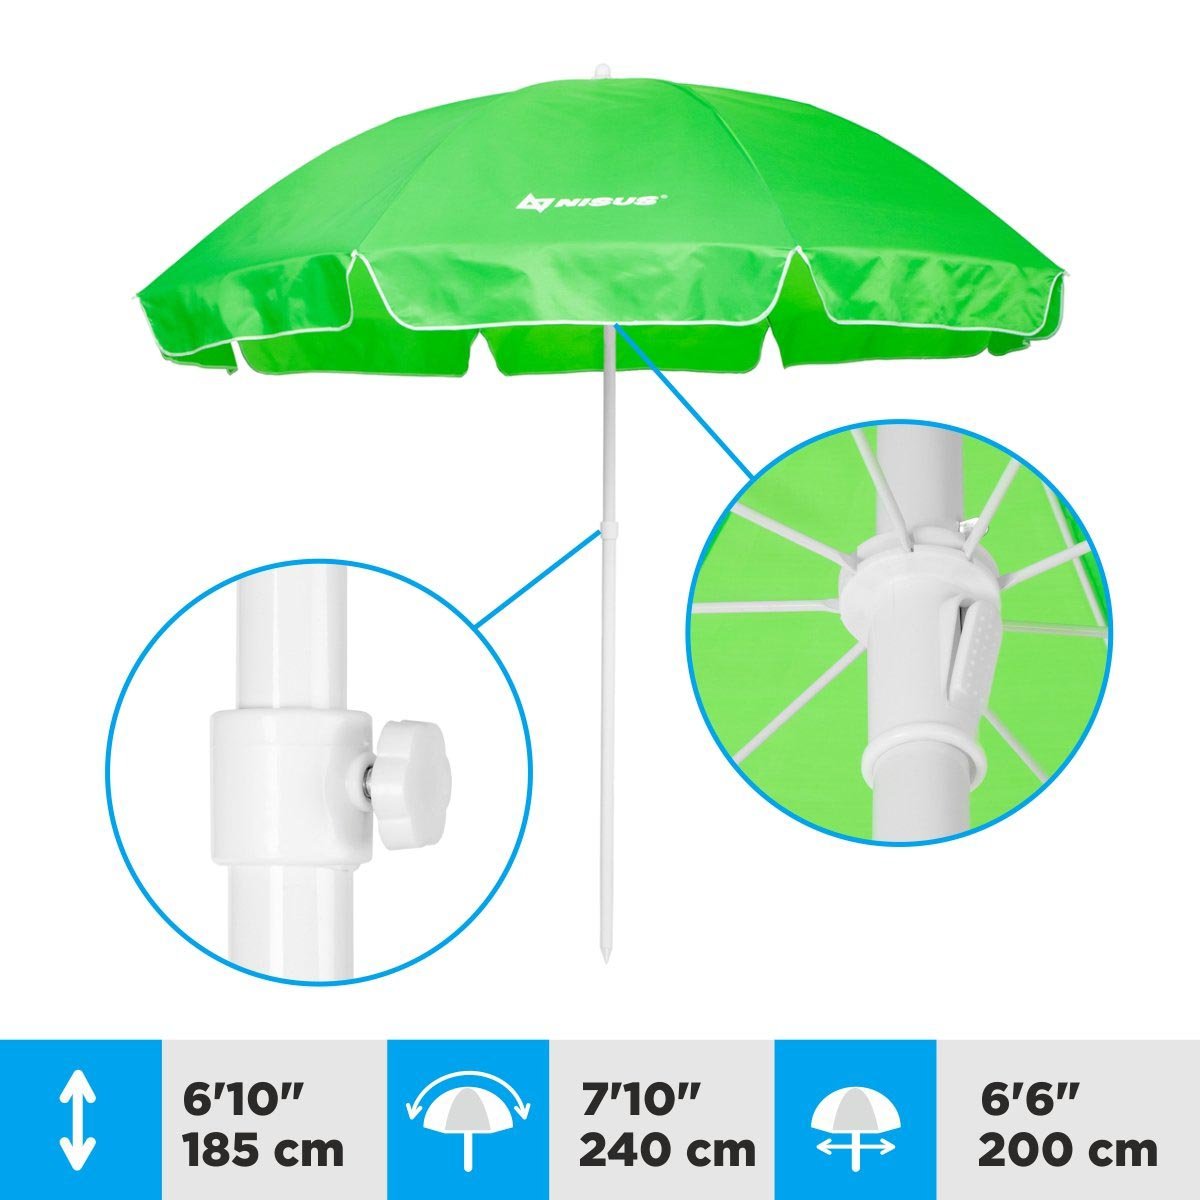 A 6.6 ft Lime Green Folding Beach Umbrella is 6.1 feet high